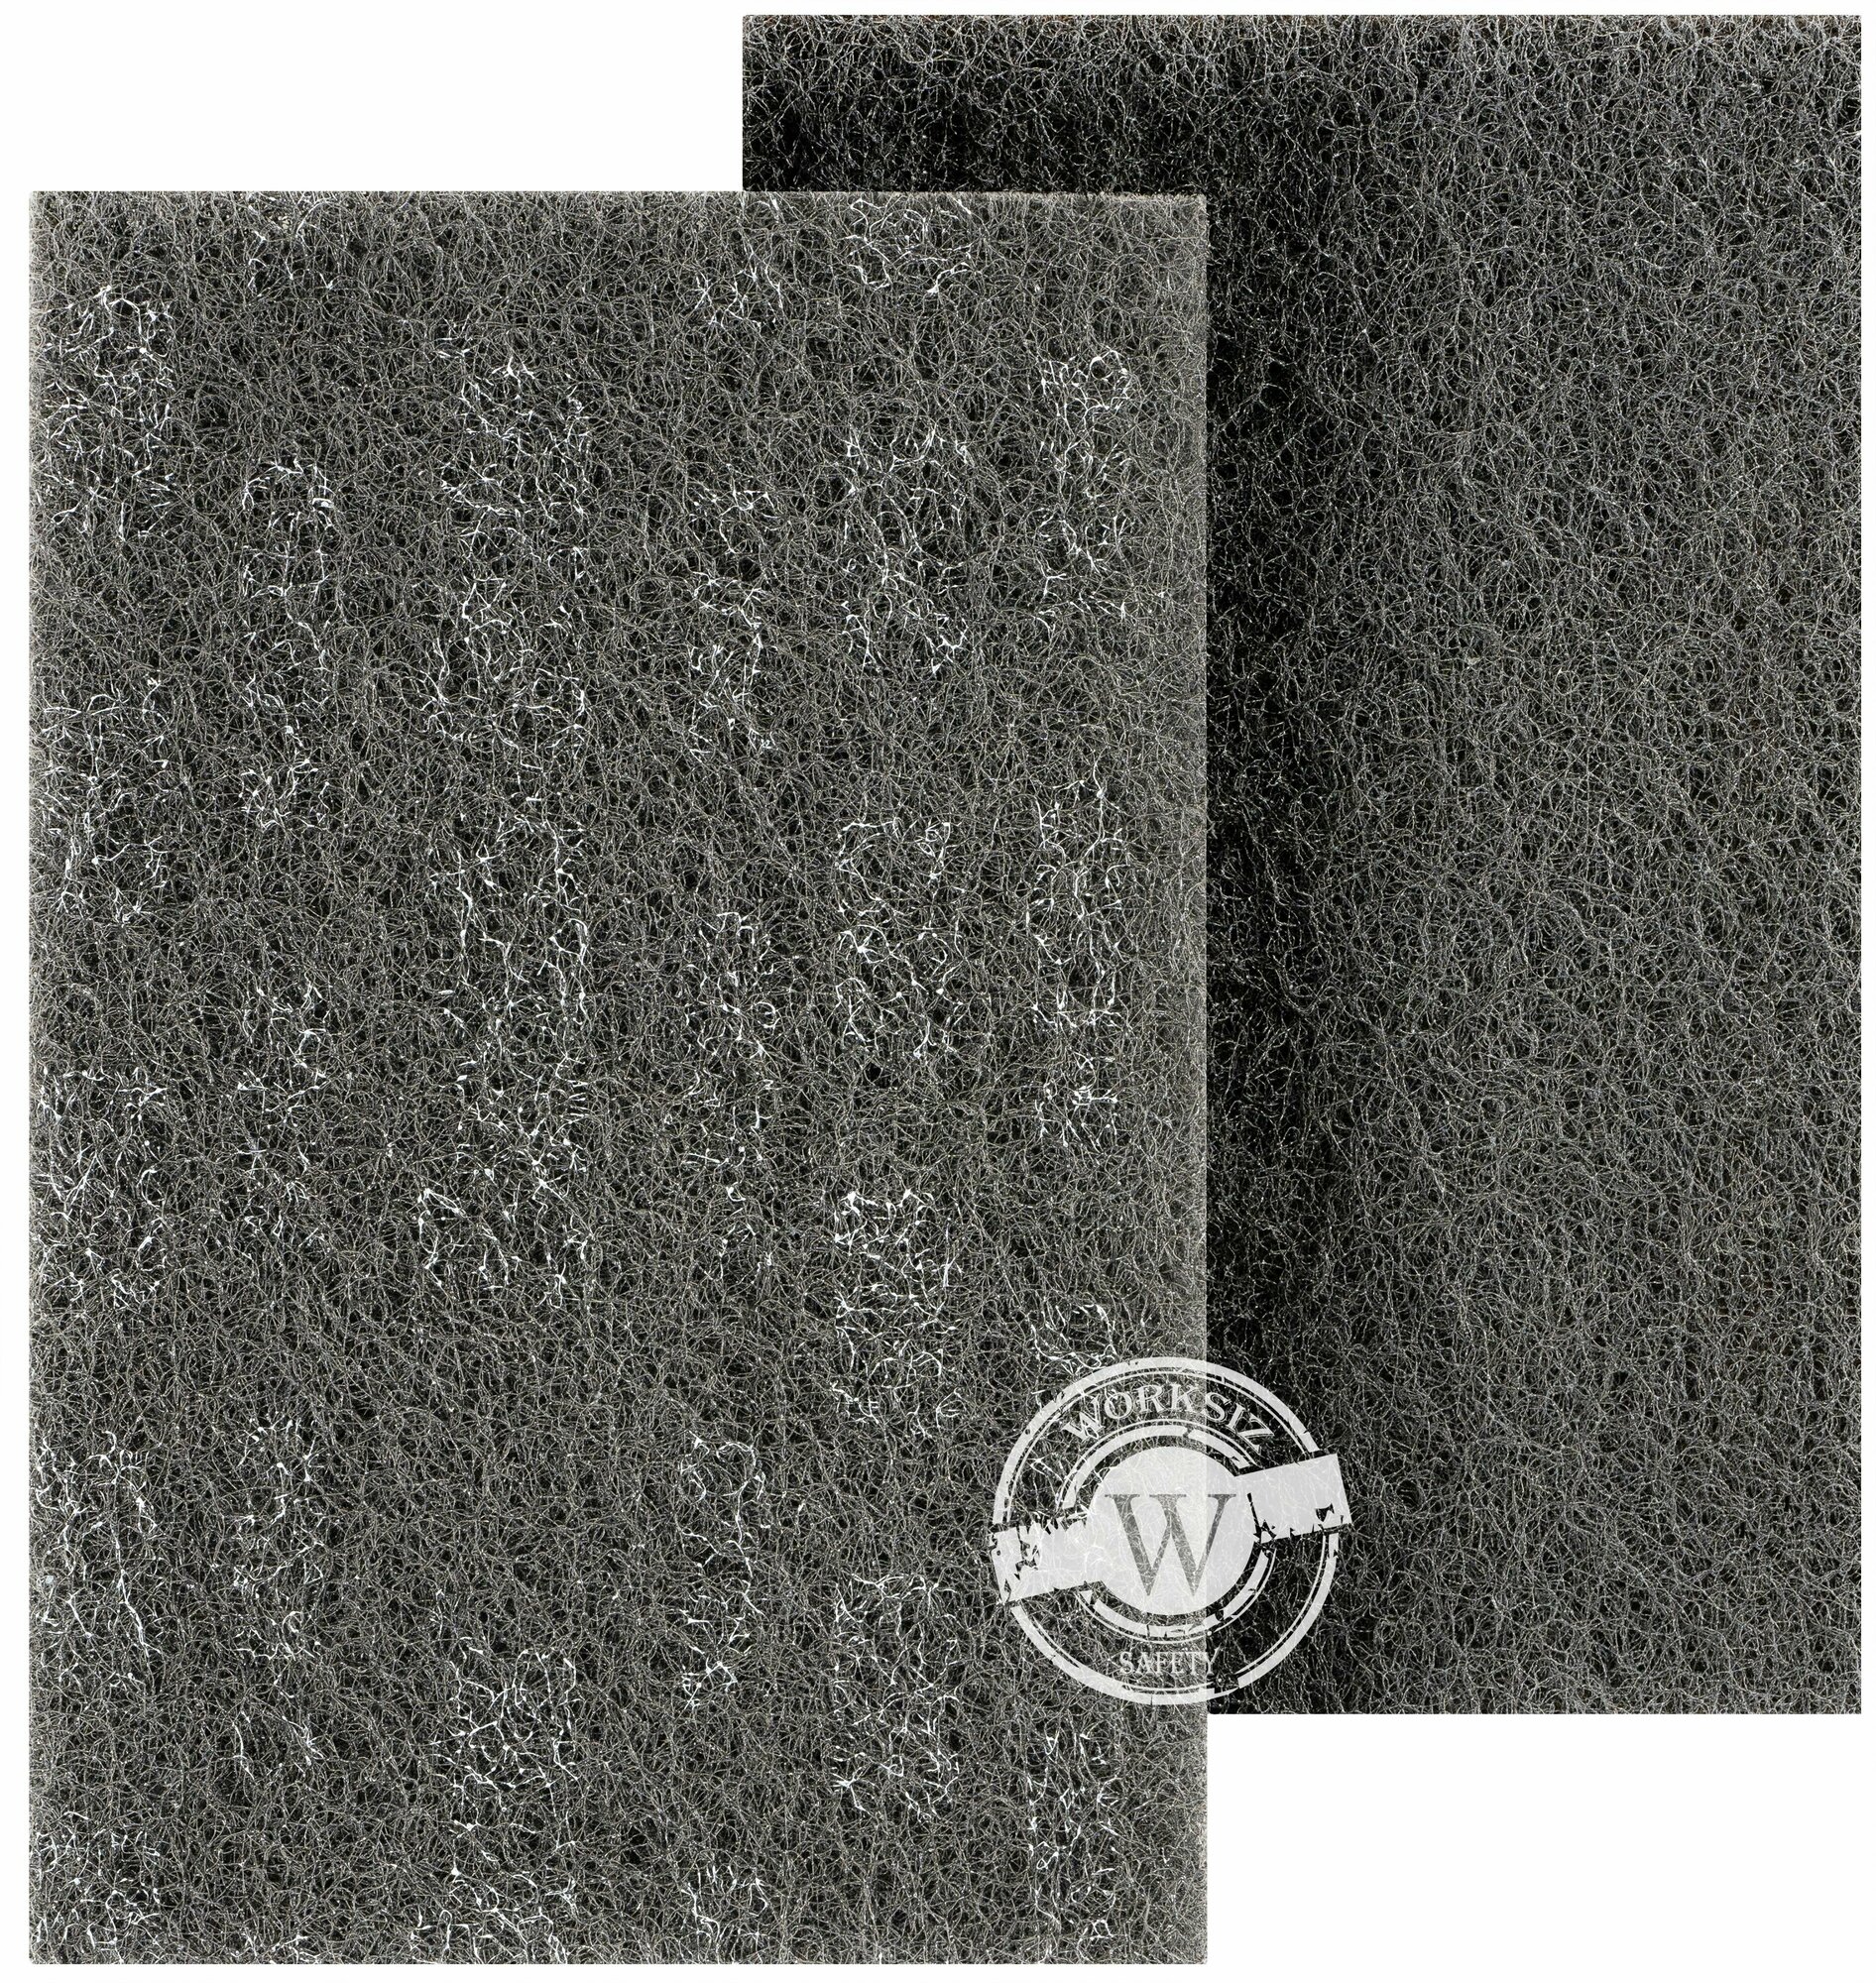 Темно-серый абразивный шлифовальный лист 3M™ Scotch-Brite™ арт. 7446 (Скотч брайт) S MED P200-P240, 158x224 мм, 1 шт.